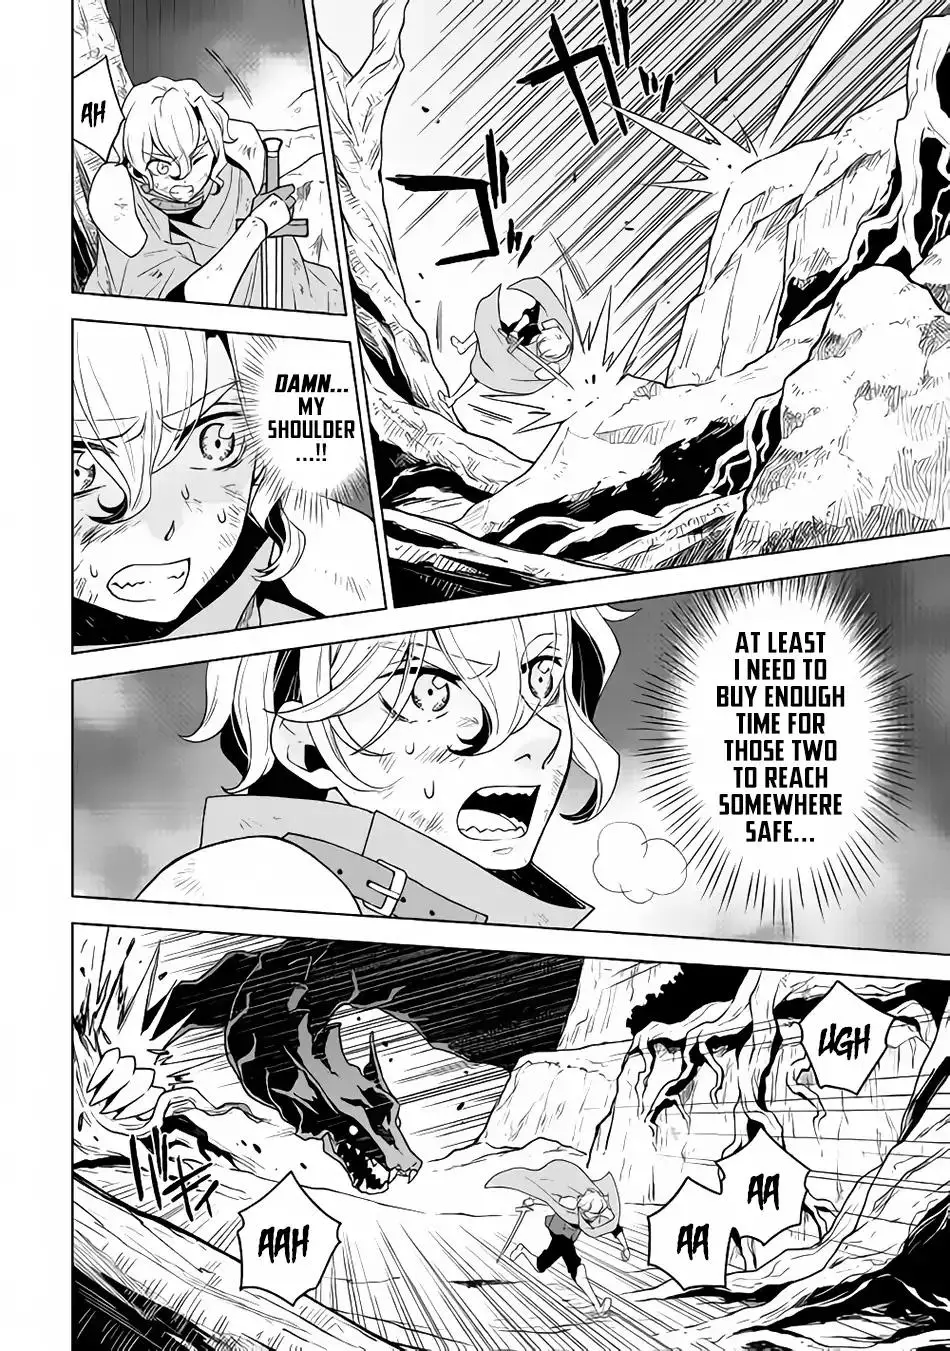 Hiraheishi wa Kako o Yumemiru - 27 page 2